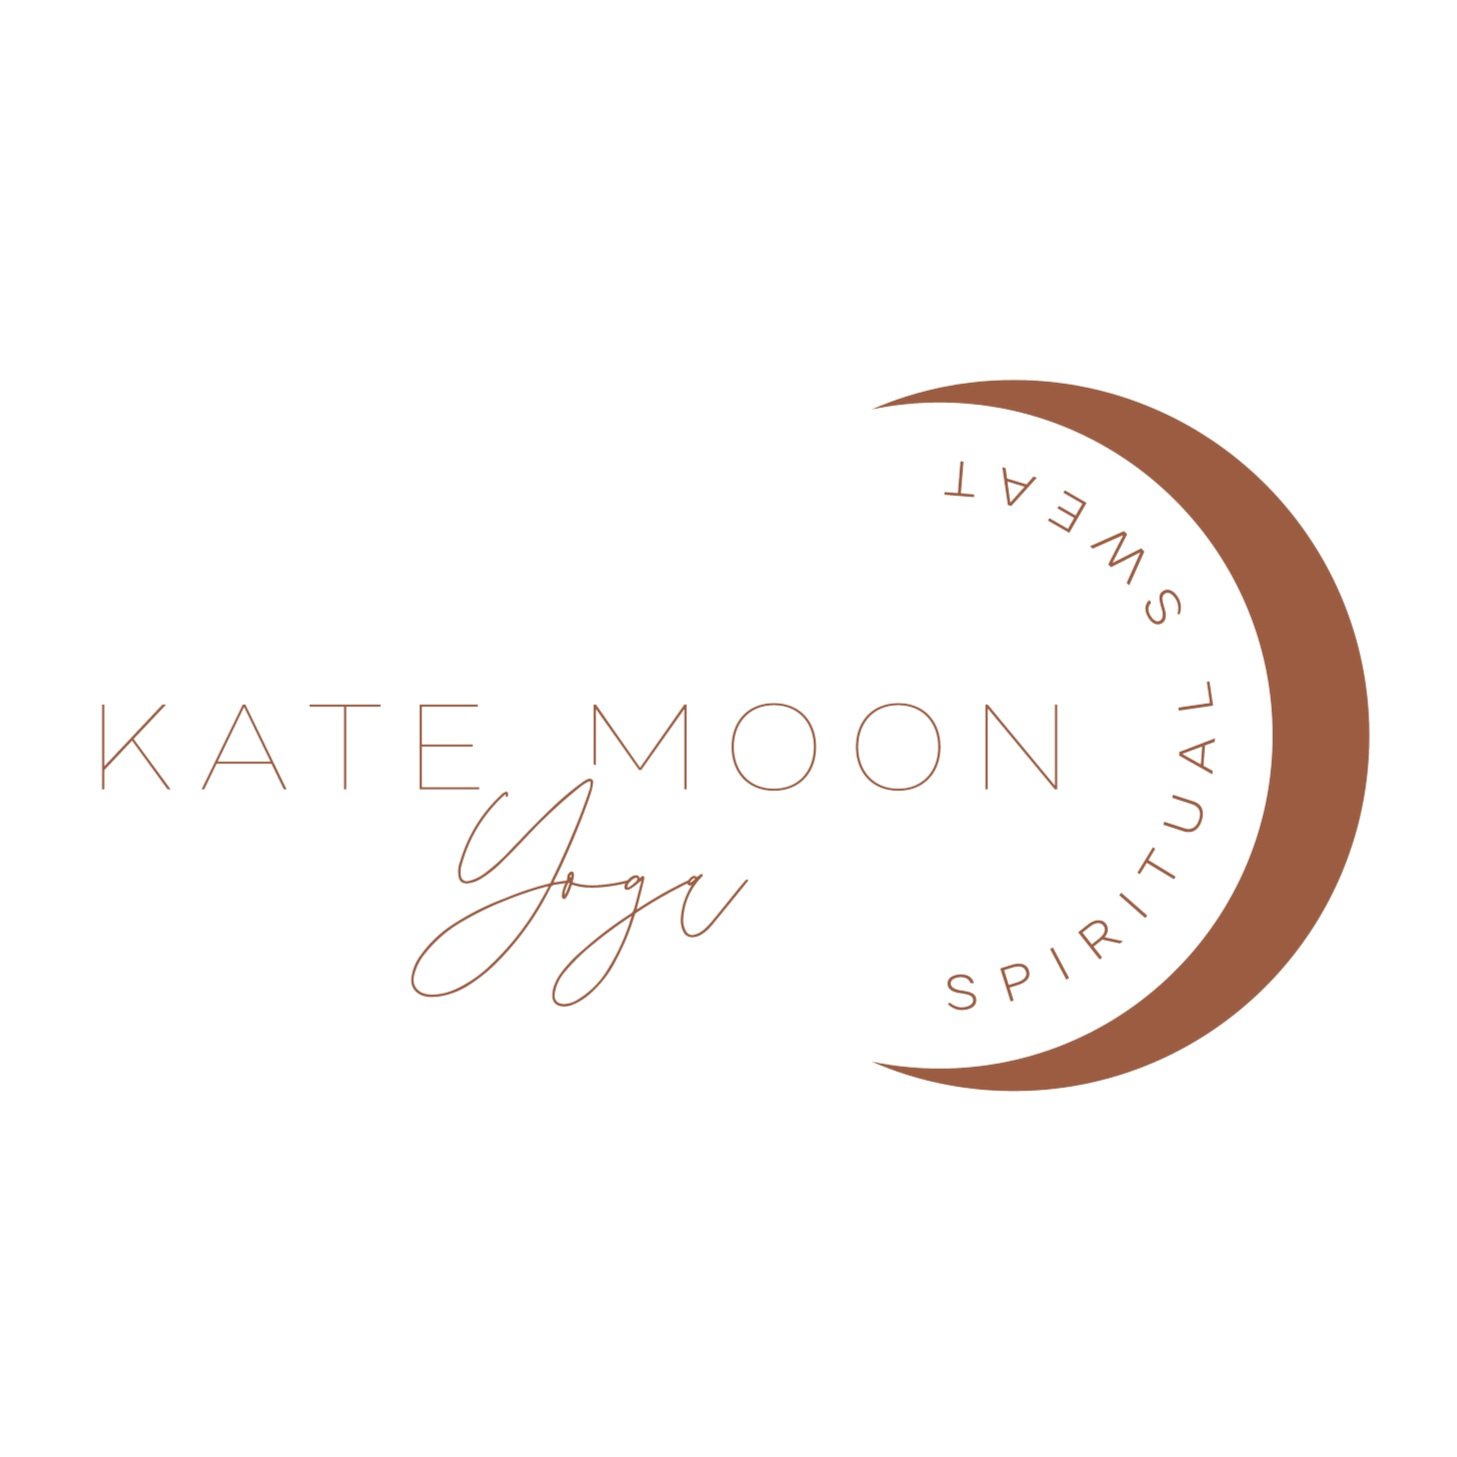 Kate Moon Yoga